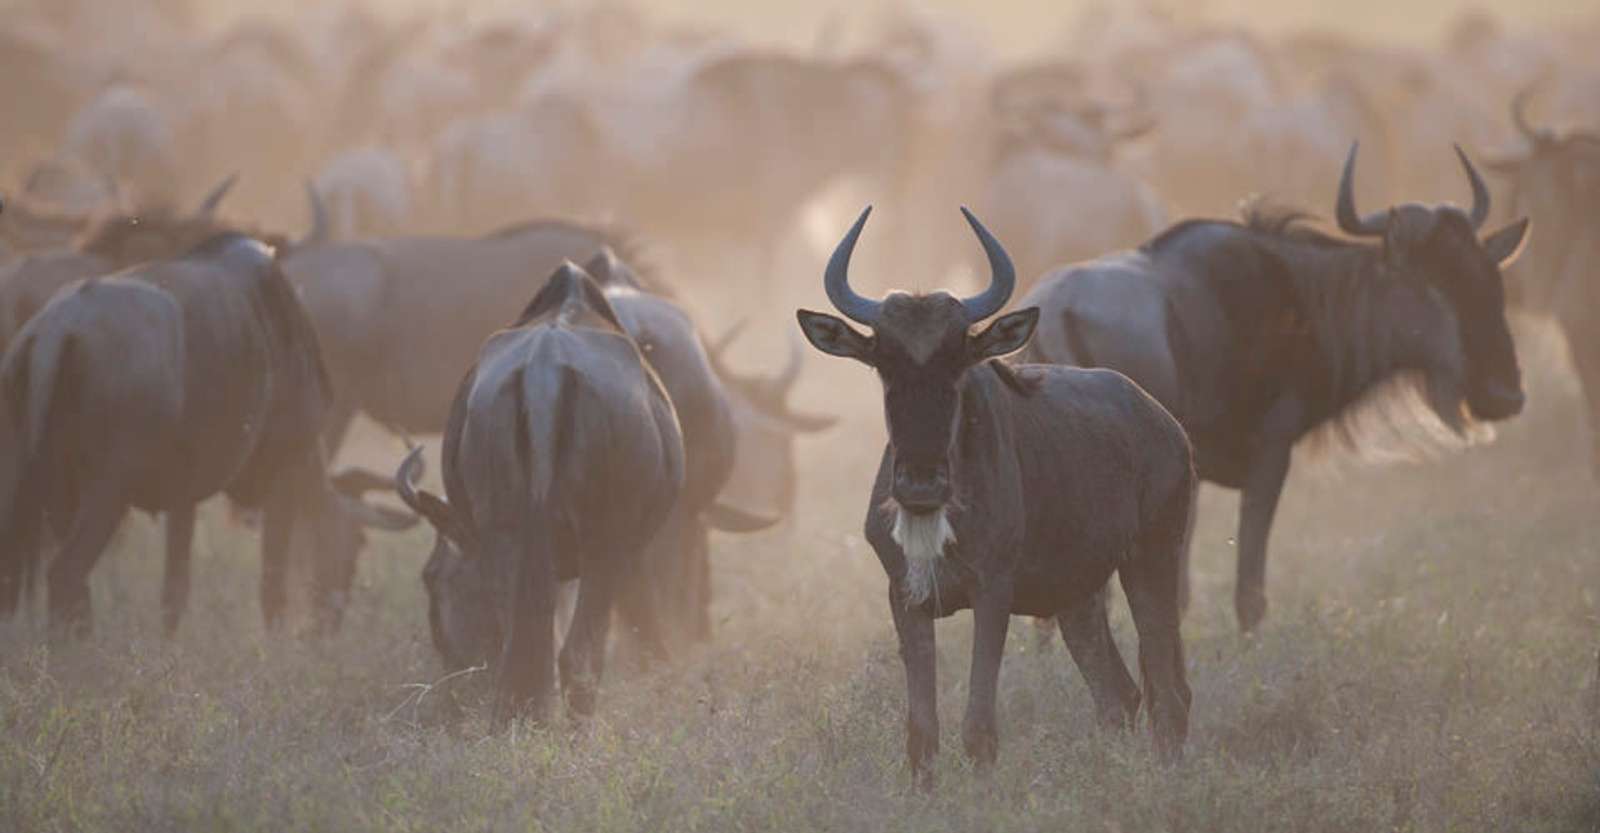 Wildebeests, Serengeti National Park, Tanzania.